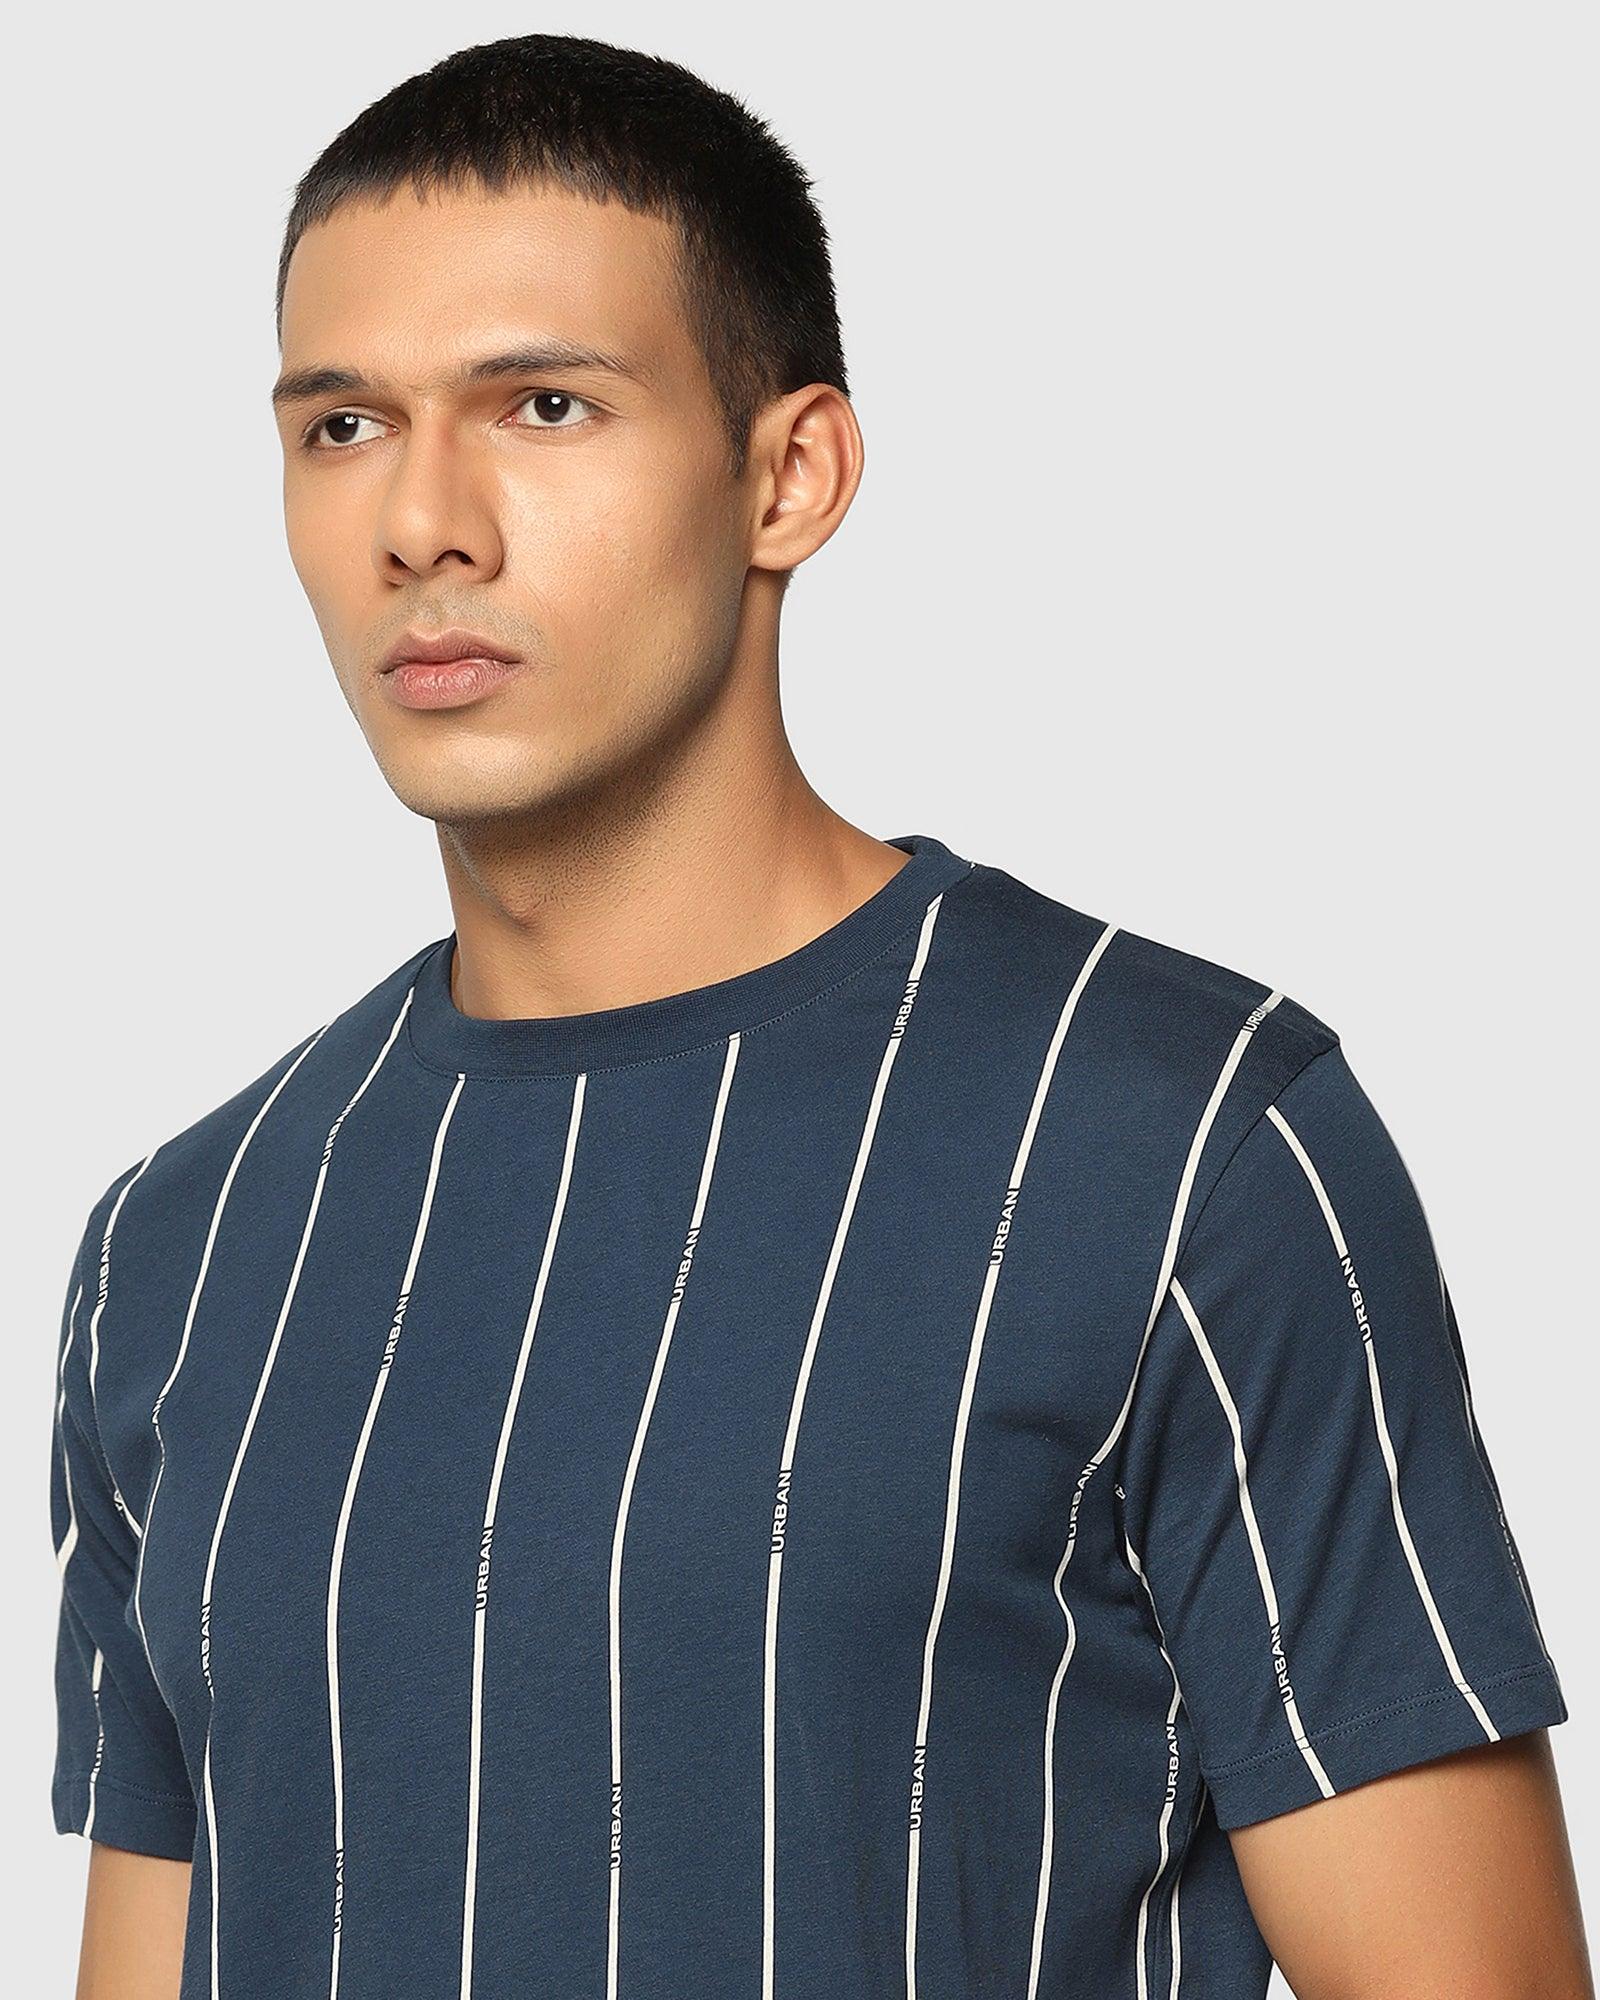 Crew Neck Deep Blue Striped T Shirt - Matrix